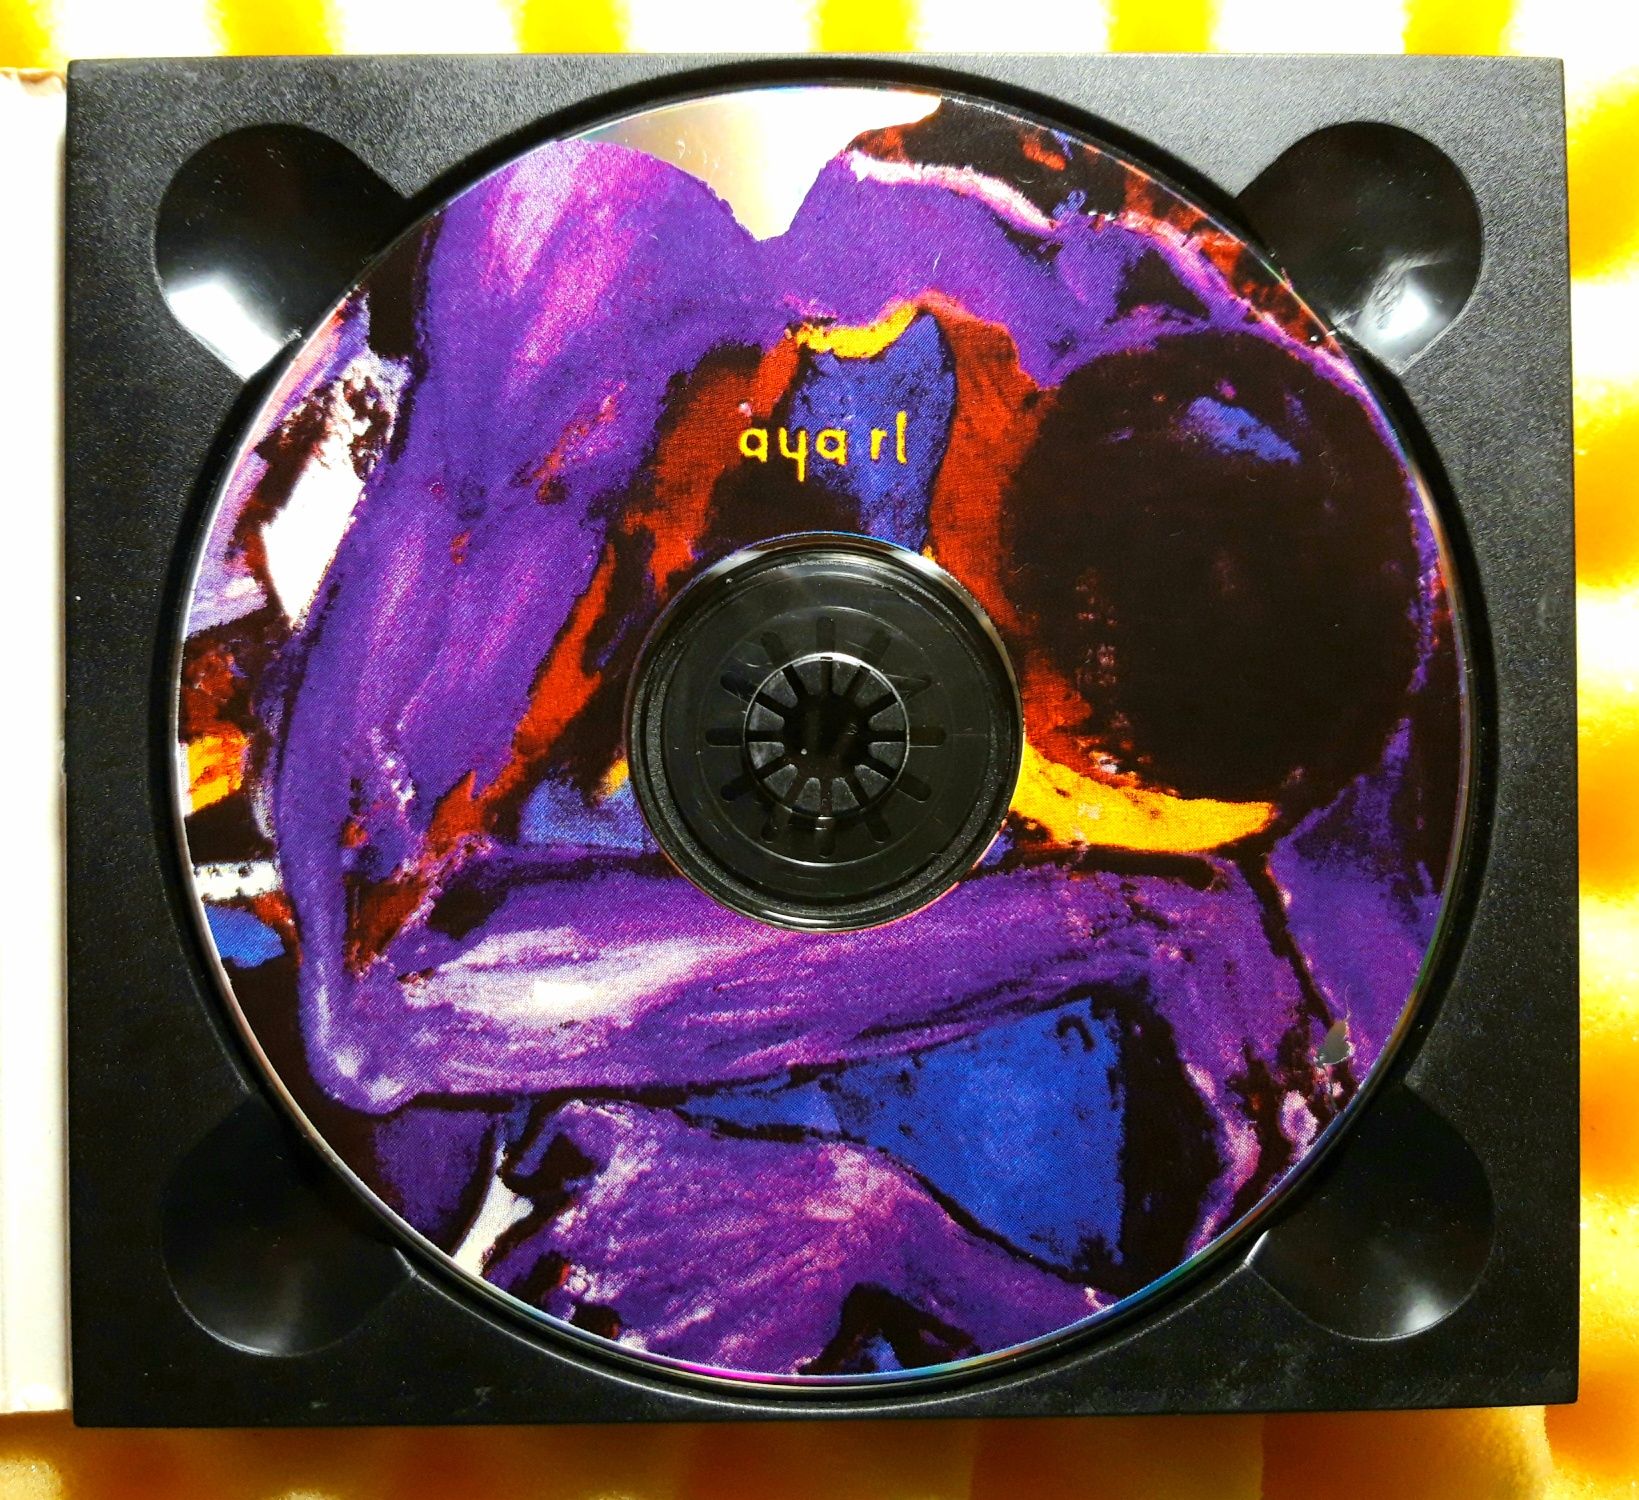 Aya RL – Nomadeus (CD, 1994)